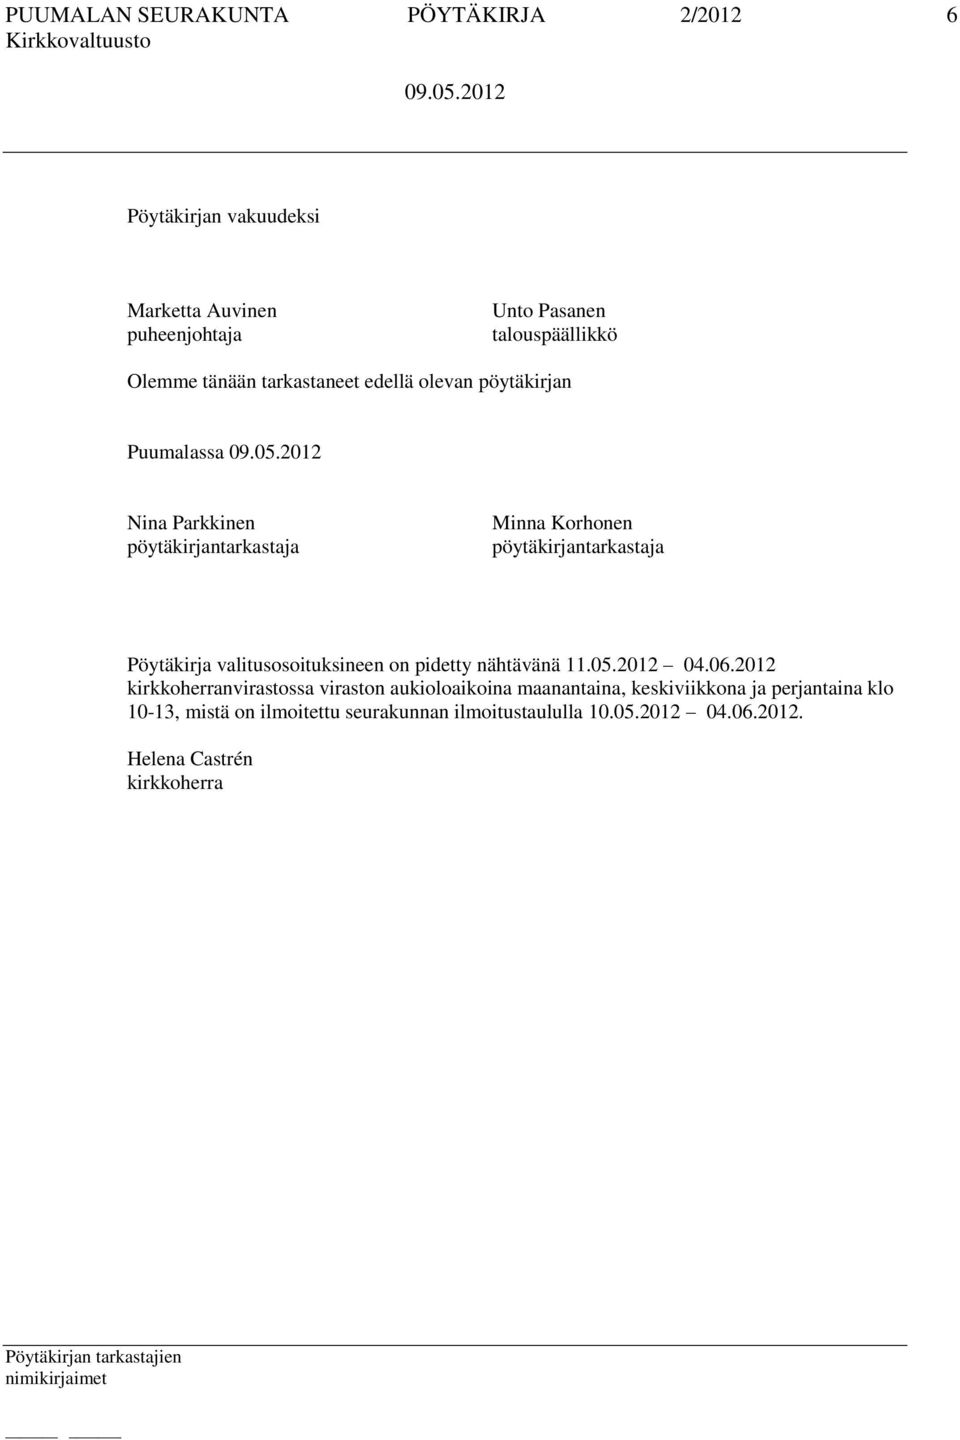 Pöytäkirja valitusosoituksineen on pidetty nähtävänä 11.05.2012 04.06.